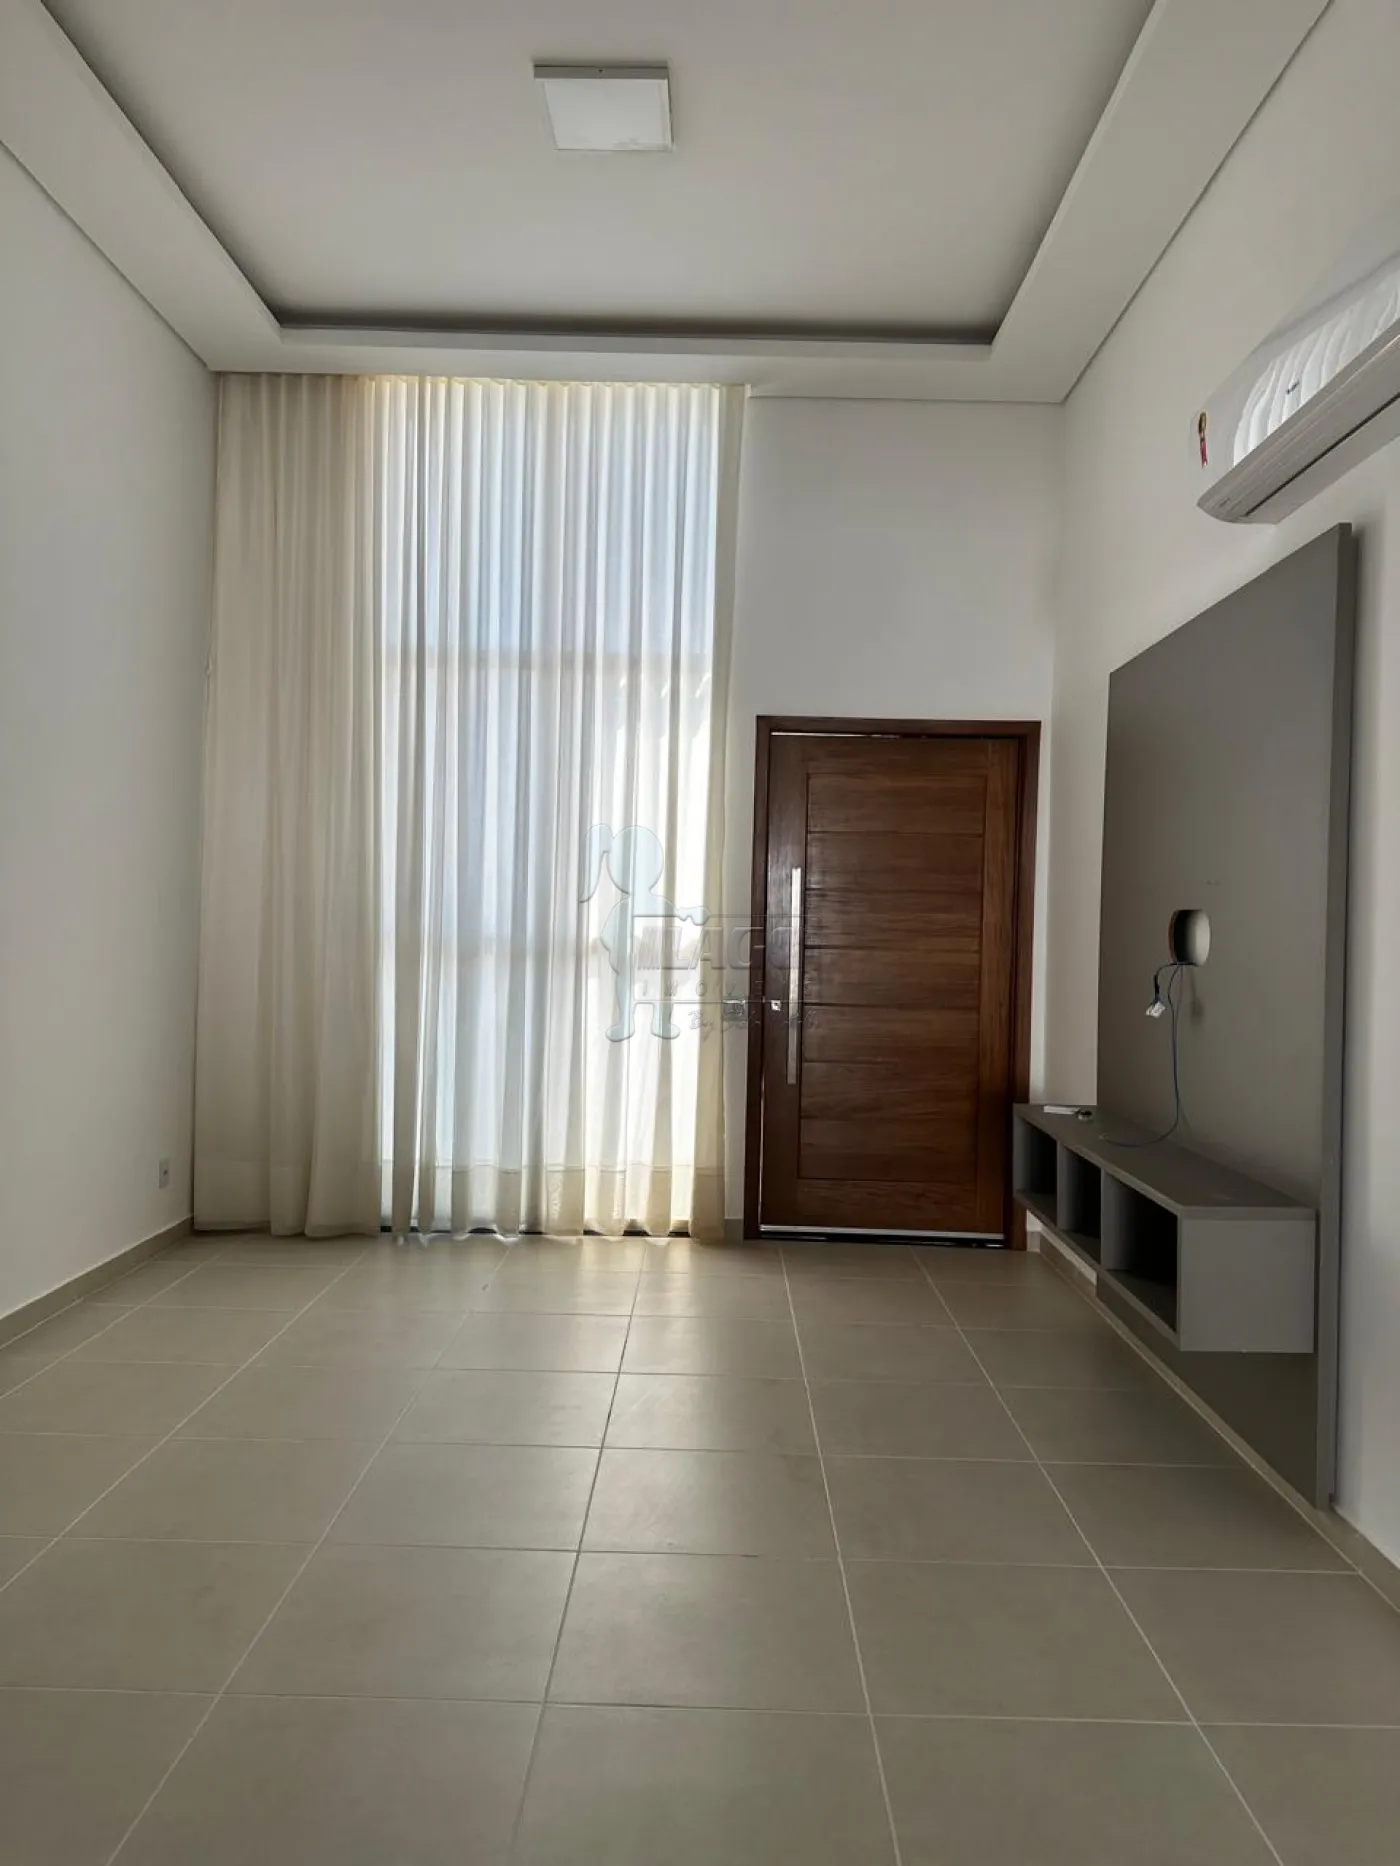 Alugar Casas / Condomínio em Bonfim Paulista R$ 5.500,00 - Foto 2